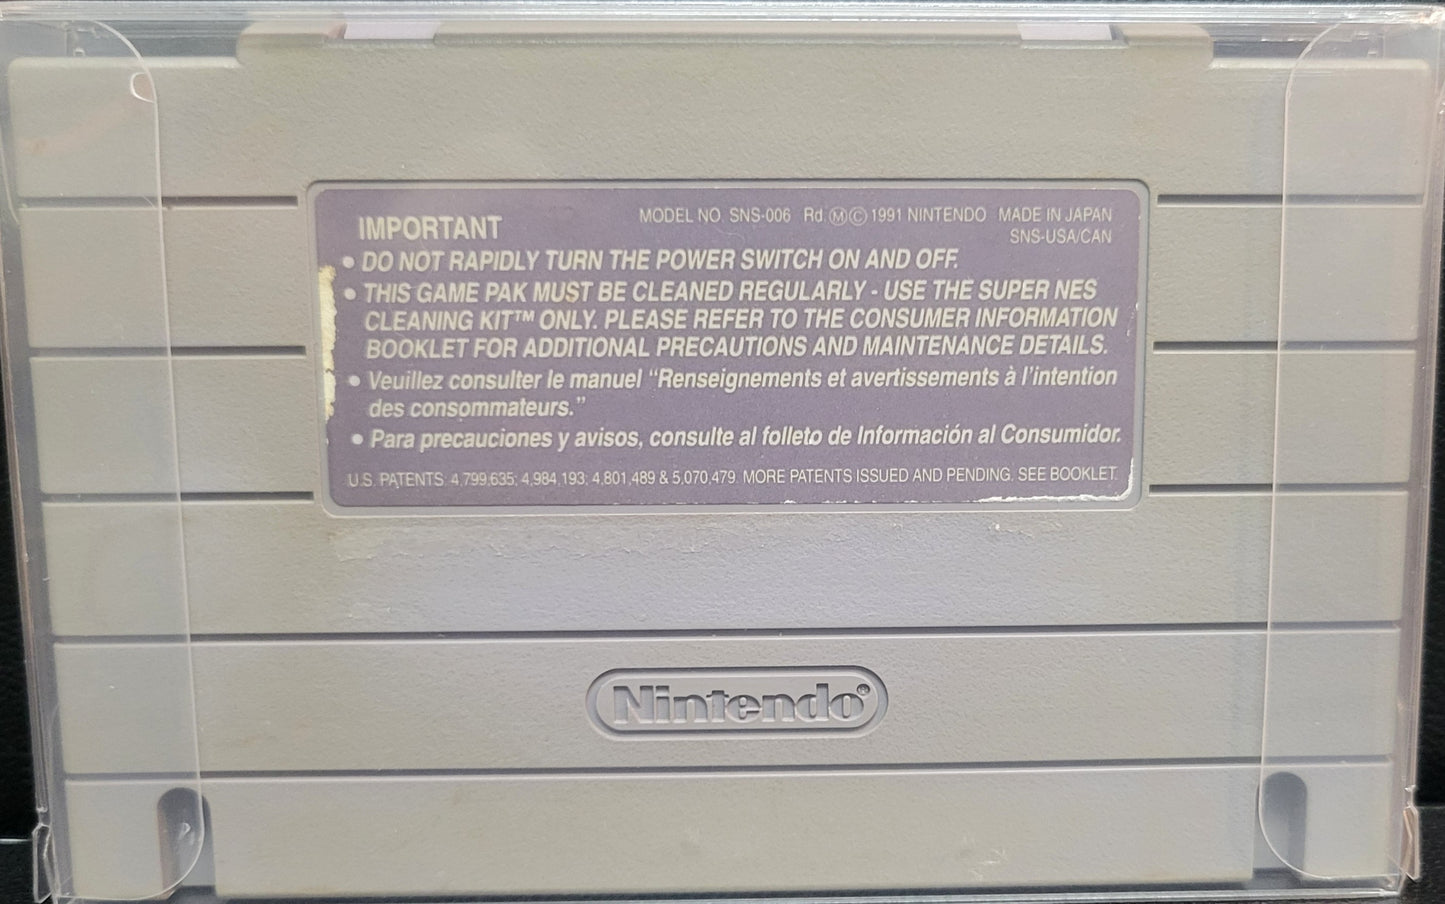 Authentic Double Dragon - SNES - Super Nintendo Ent. System 1992 NTSC Cartridge